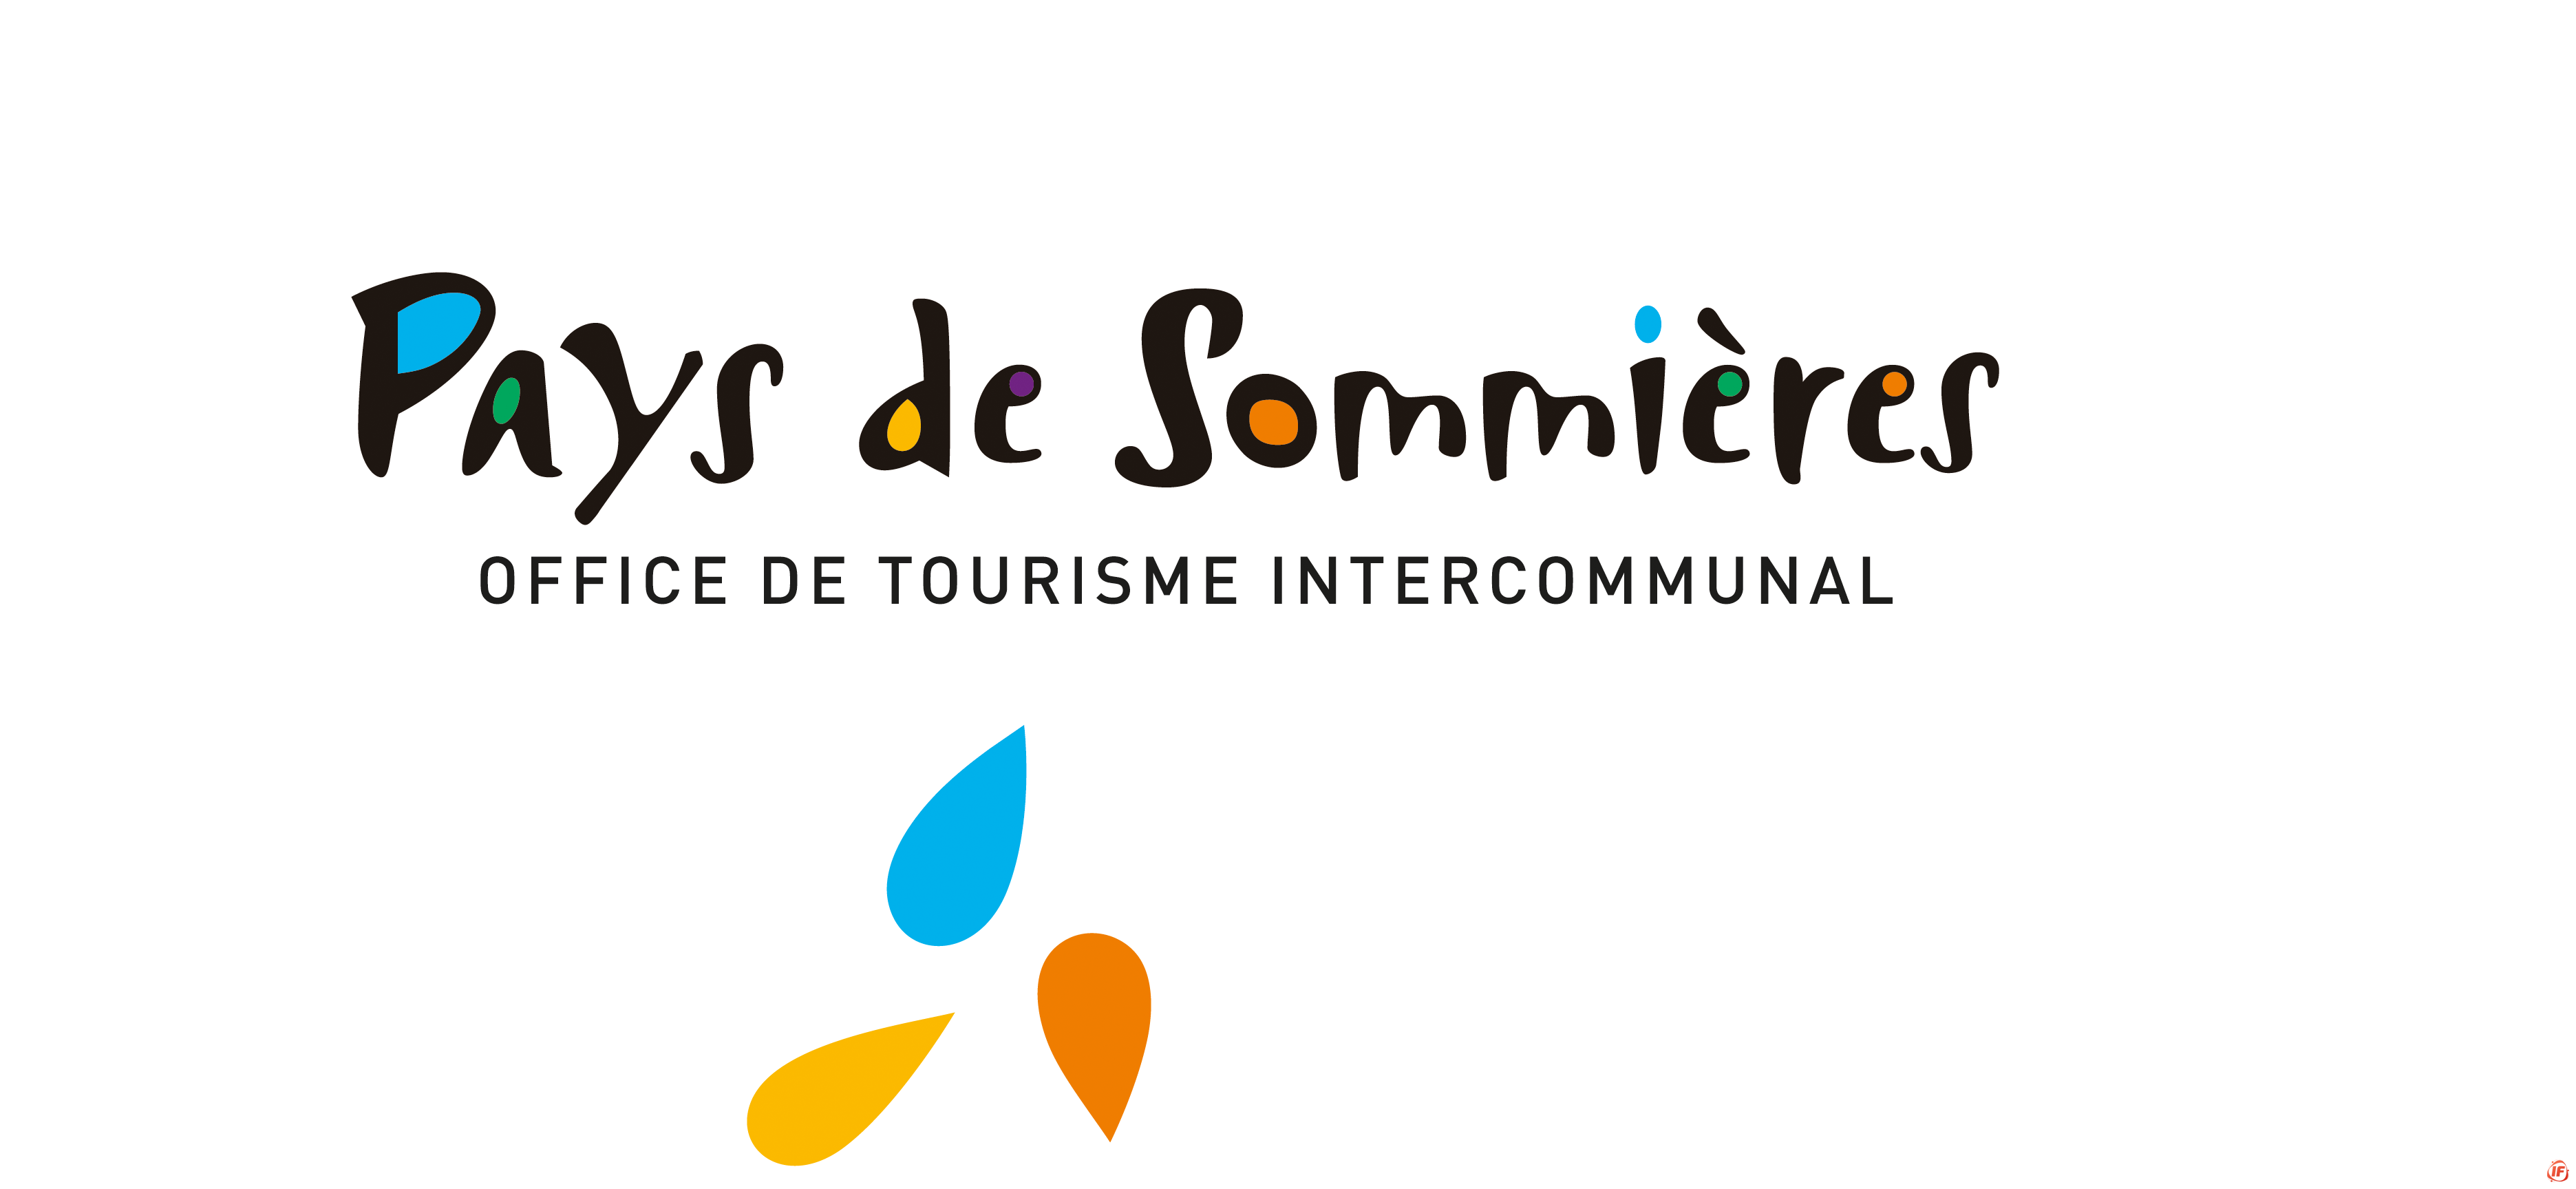 Horaires de l'Office de Tourisme Intercommunal (1/1)